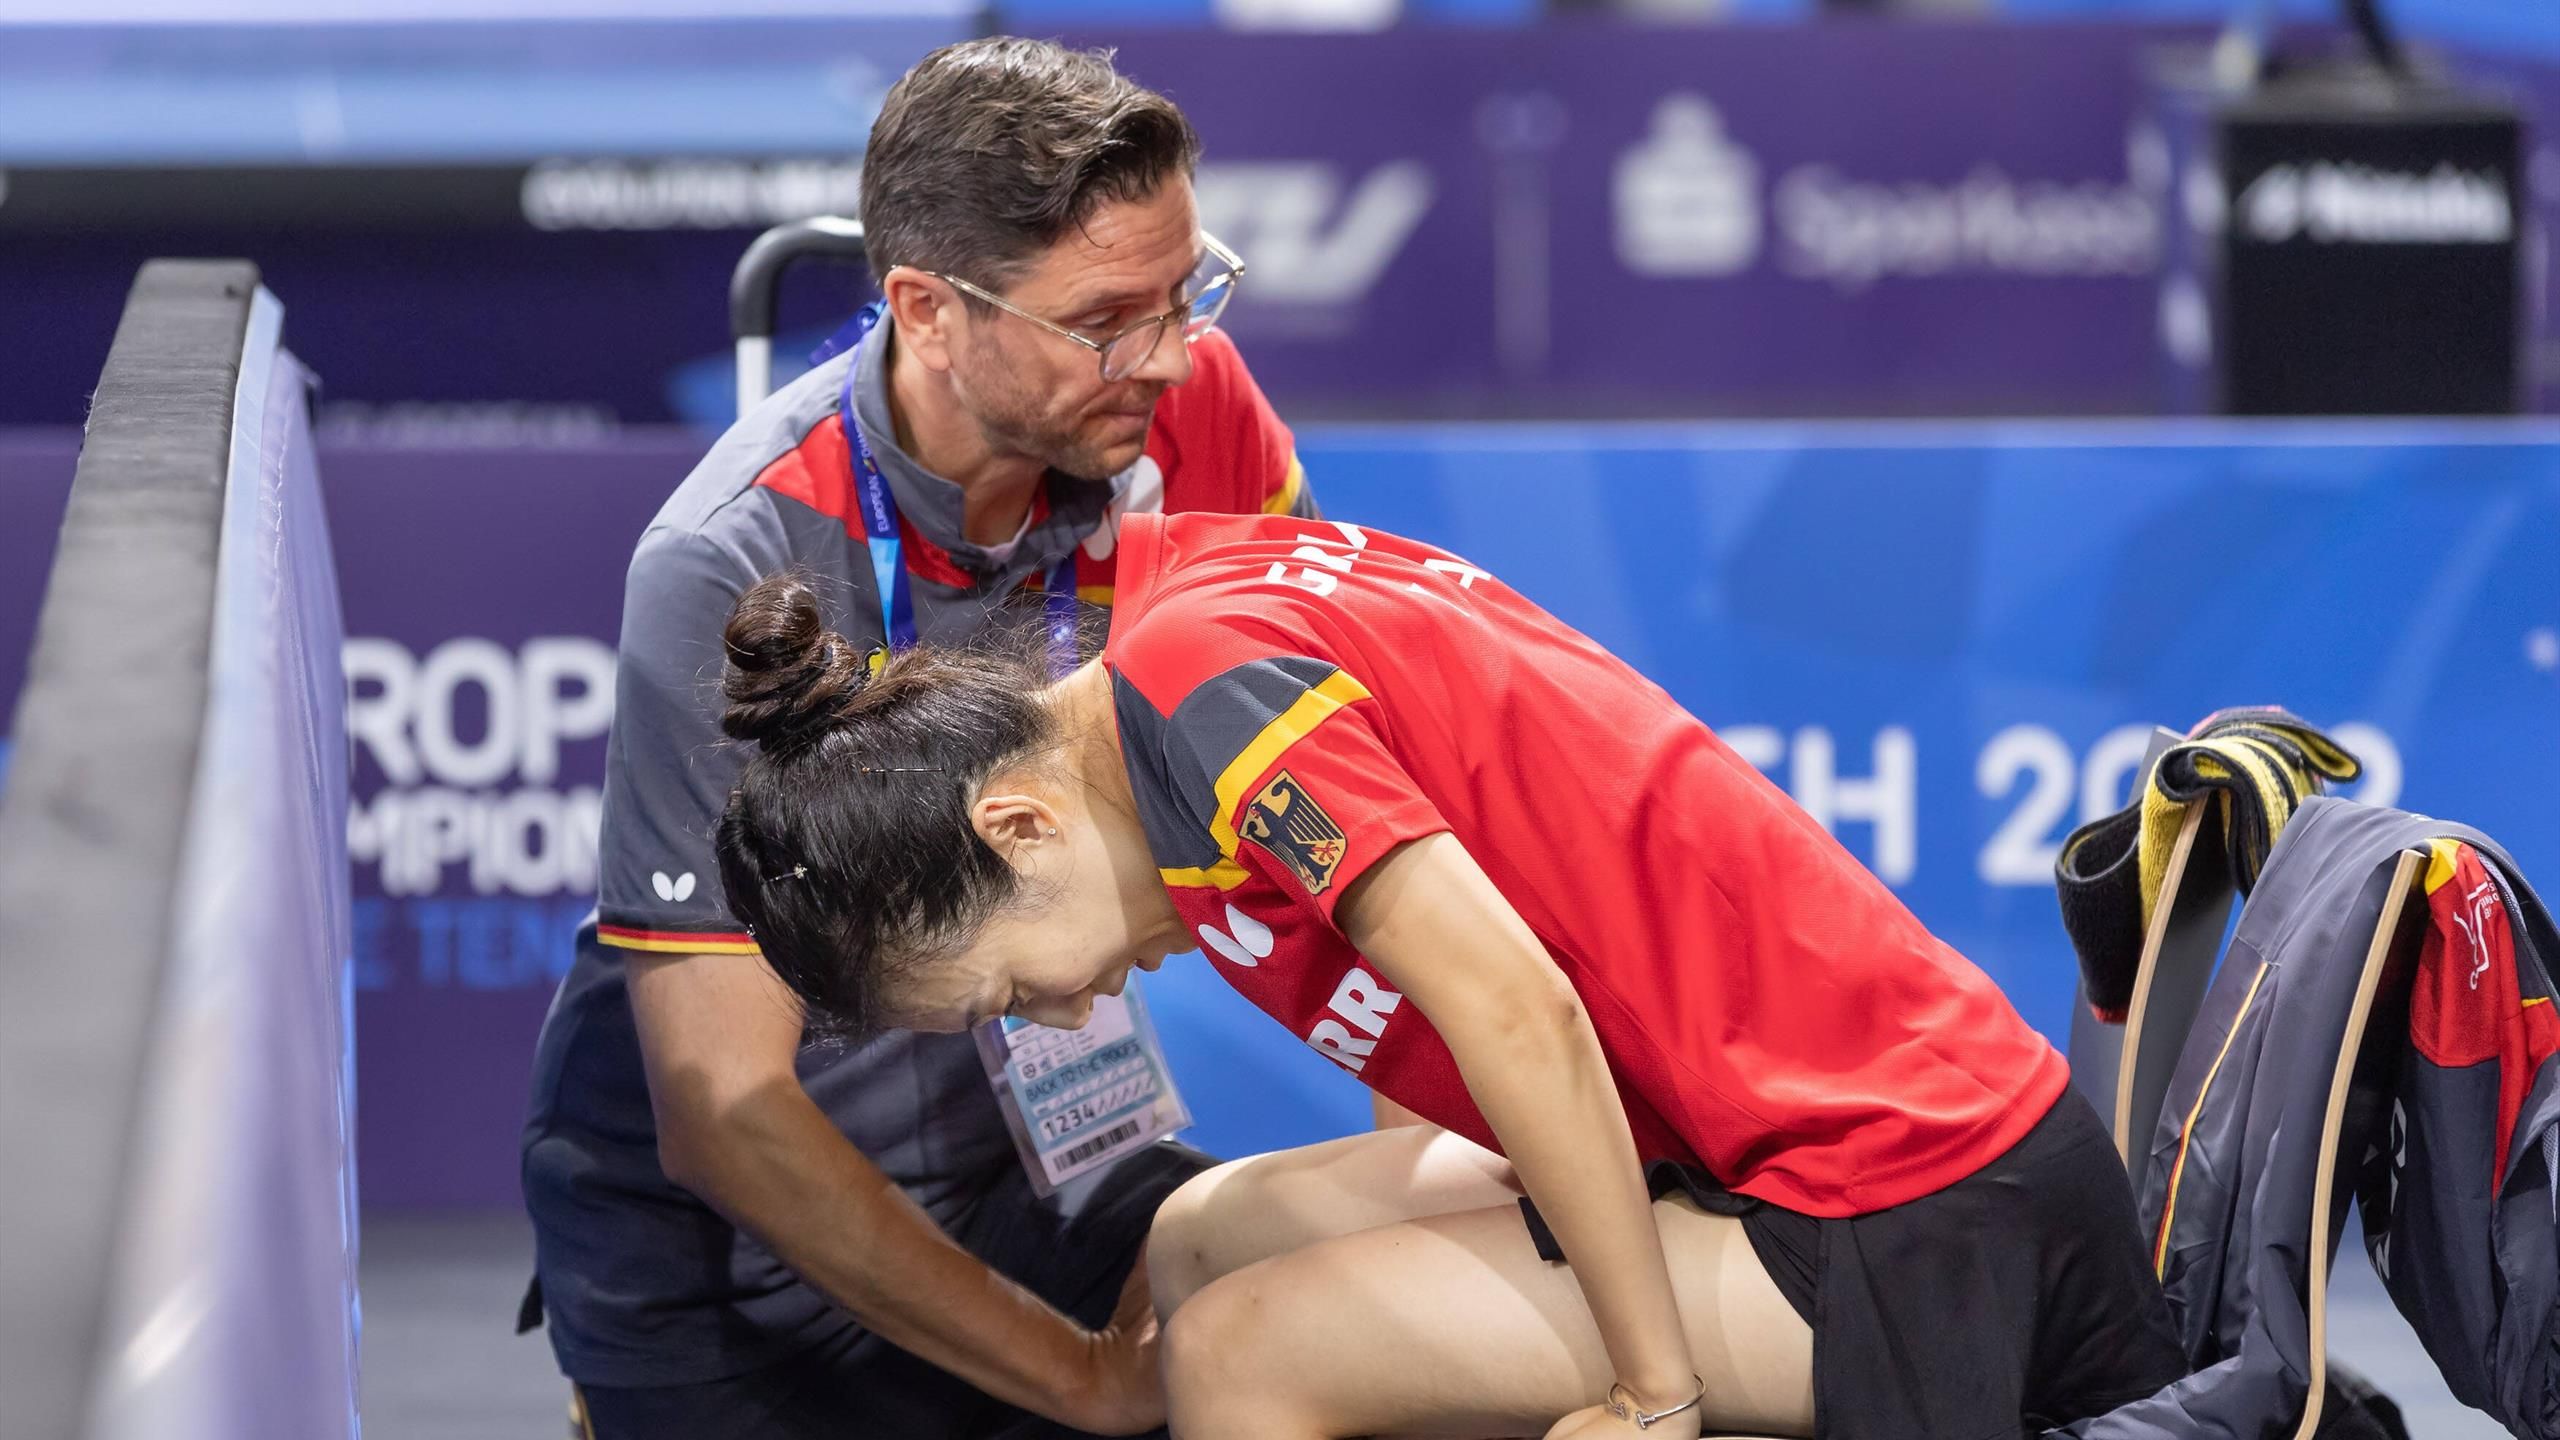 Tischtennis-EM Han Ying gibt deutsches Duell im Achtelfinale gegen Sabine Winter nach nur einem gespielten Punkt auf